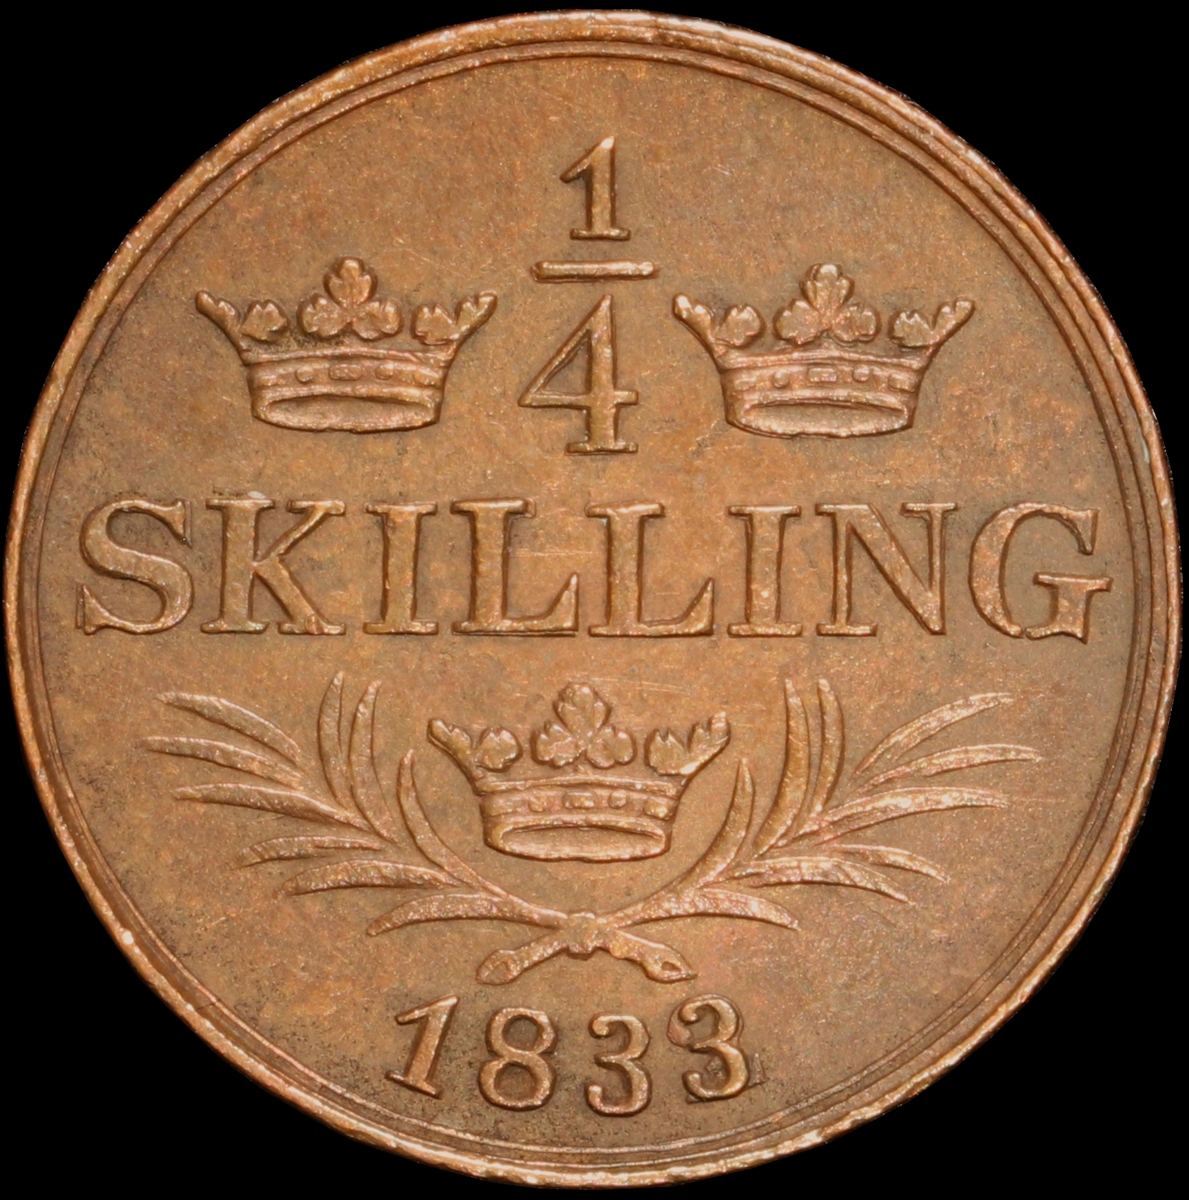 Mynt med valören 1/4 skilling. Åtsidan har en bild av Kung Karl XIV Johan och frånsidan visar valör, tre kronor och två kvistar.